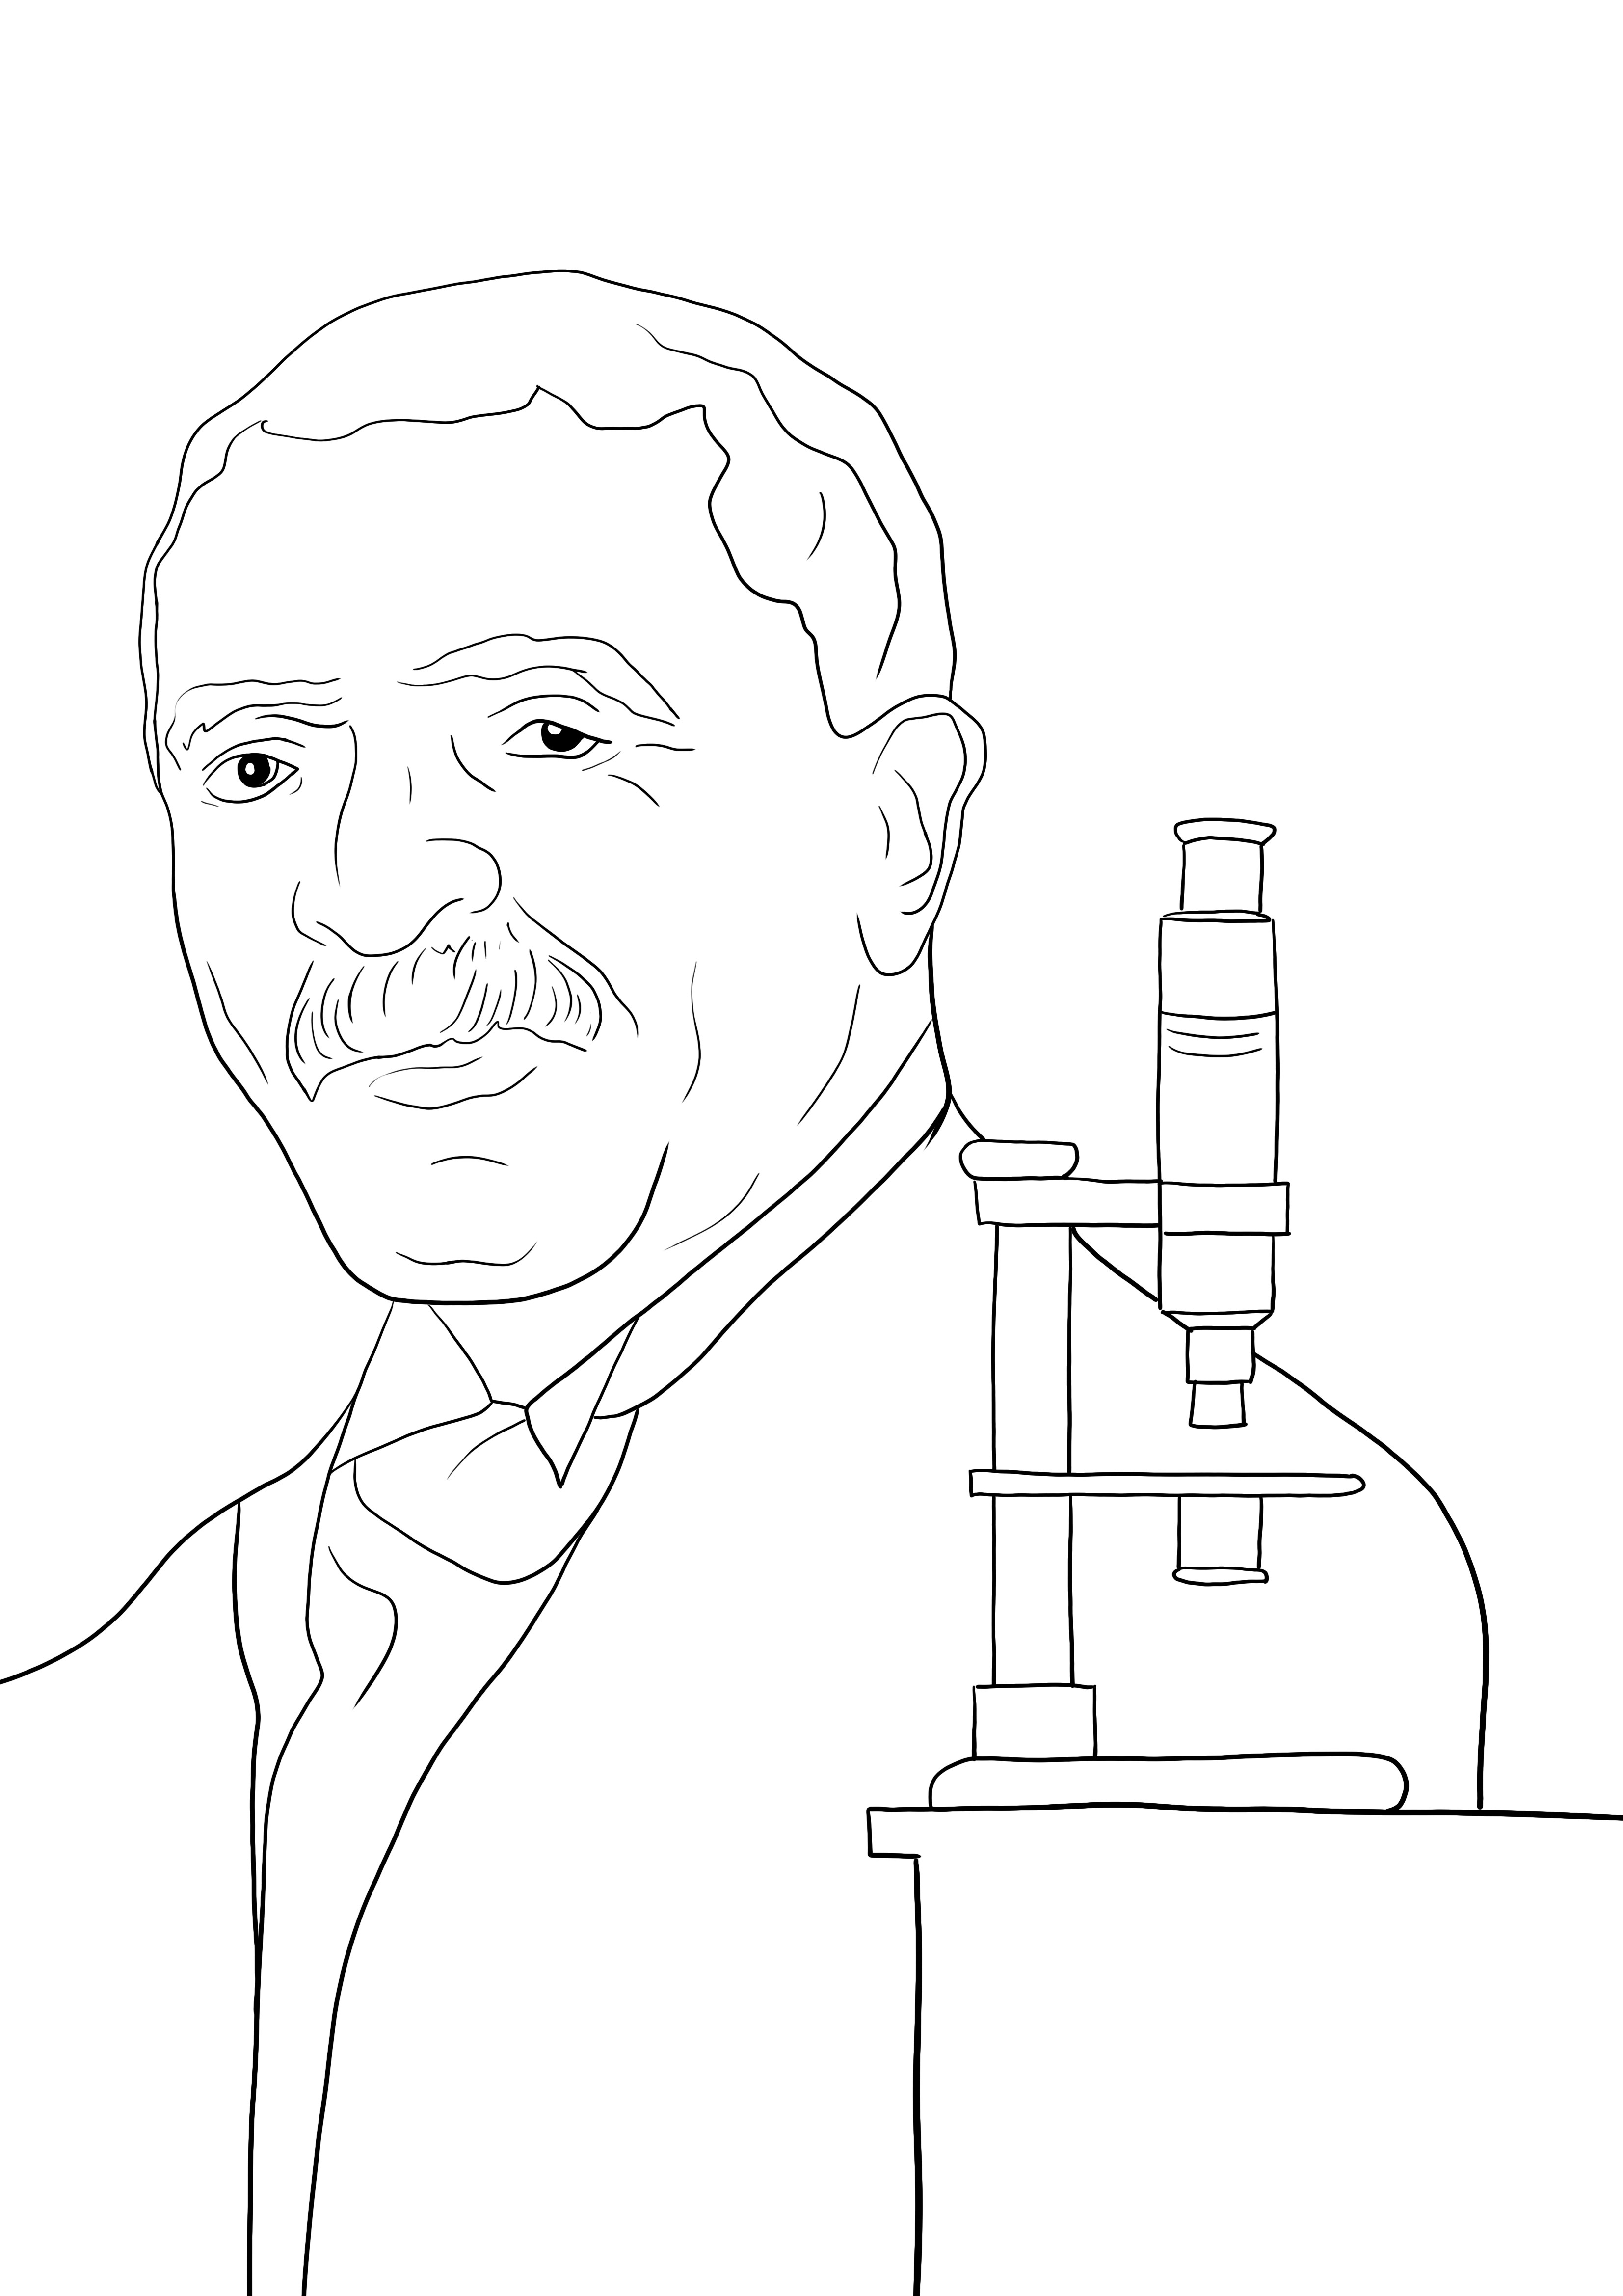 George Washington Carver ücretsiz kullanım için boyama sayfası